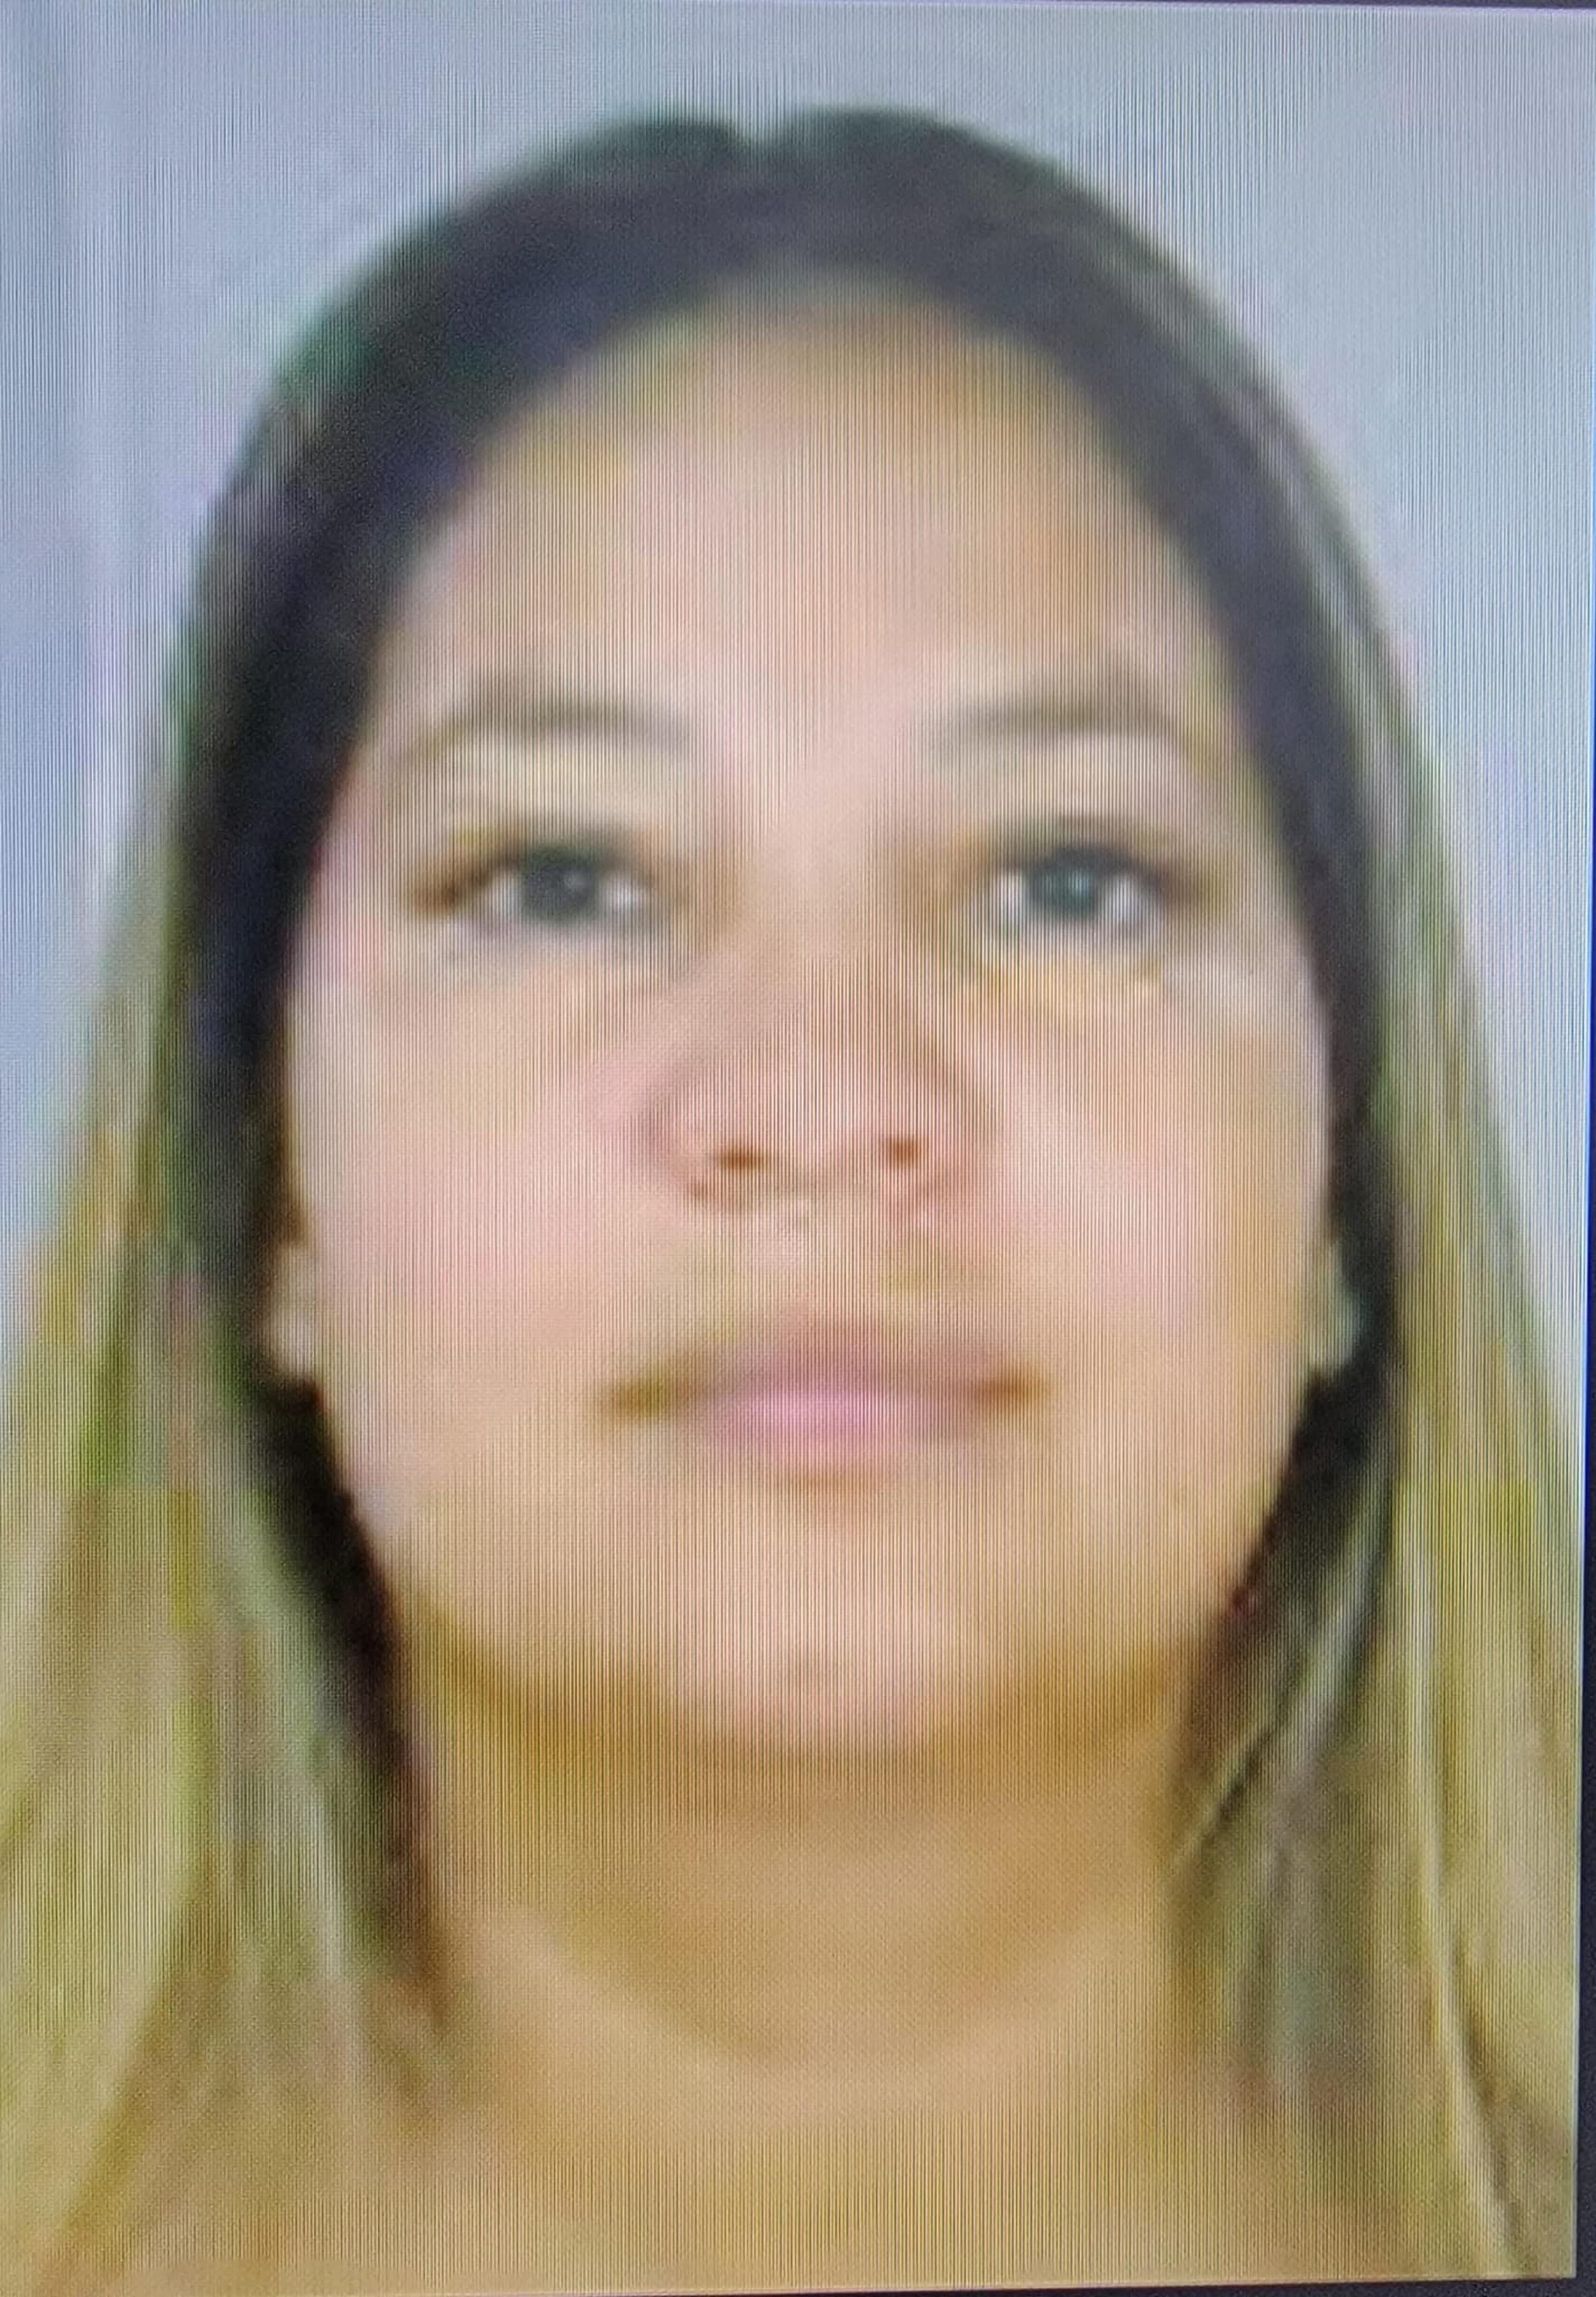 Contra Anabel Pagán Vázquez de 42 años y residente en Juana Díaz, pesa una orden de arresto por un cargo de incumplimiento de órdenes de protección. Si la ha visto llame a la línea confidencial del Negociado de la Policía al (787) 343-2020.